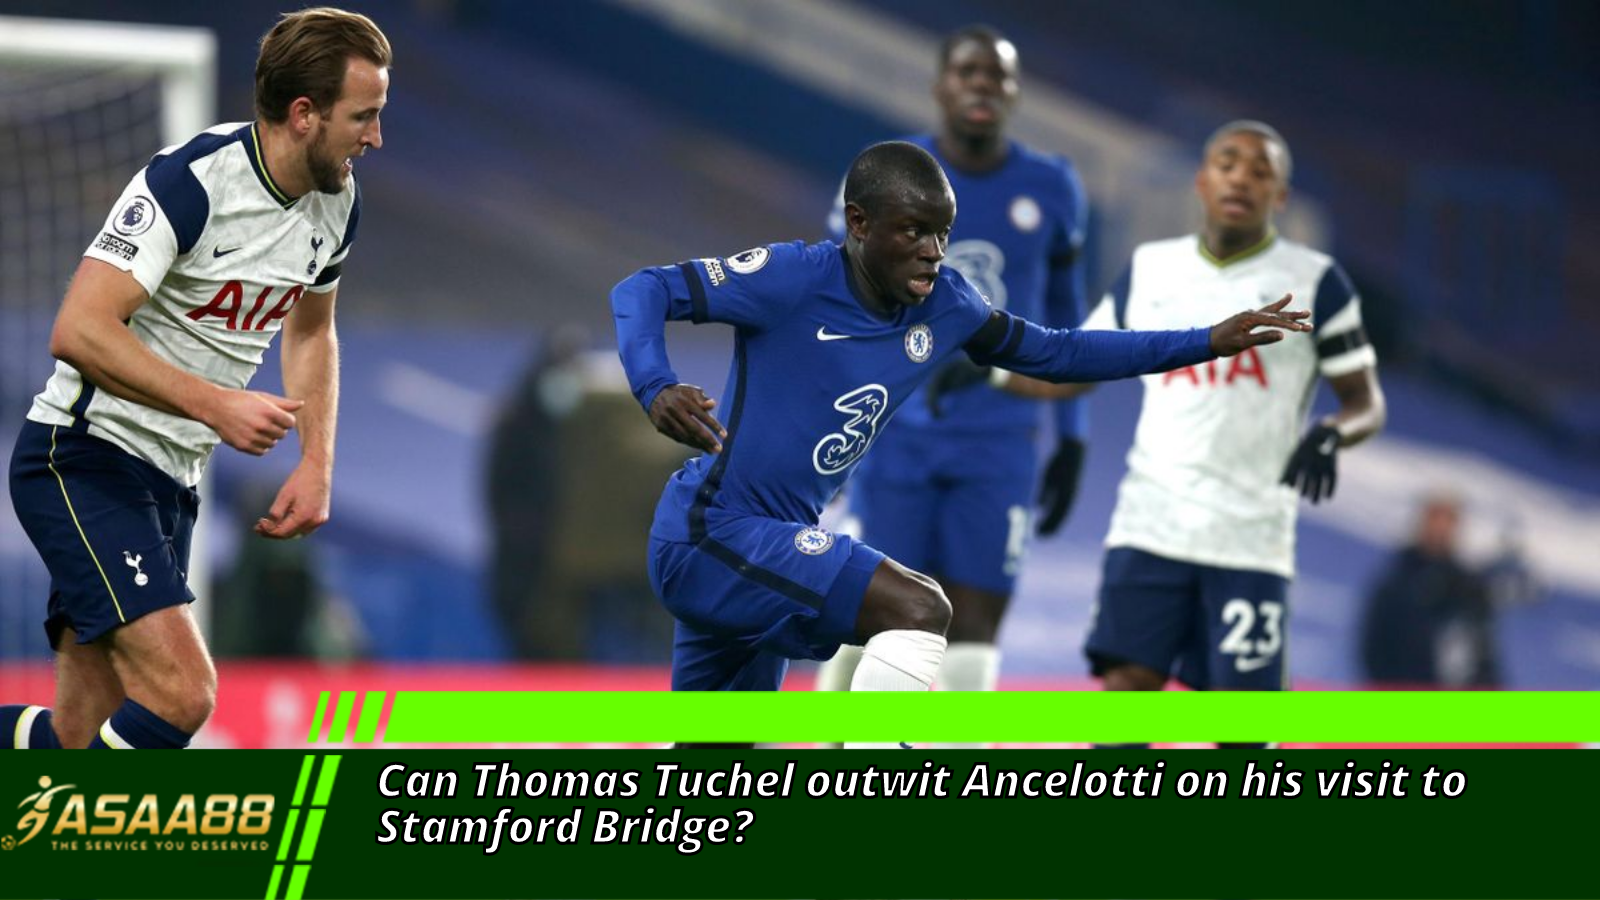 Can Thomas Tuchel outwit Ancelotti on his visit to Stamford Bridge?